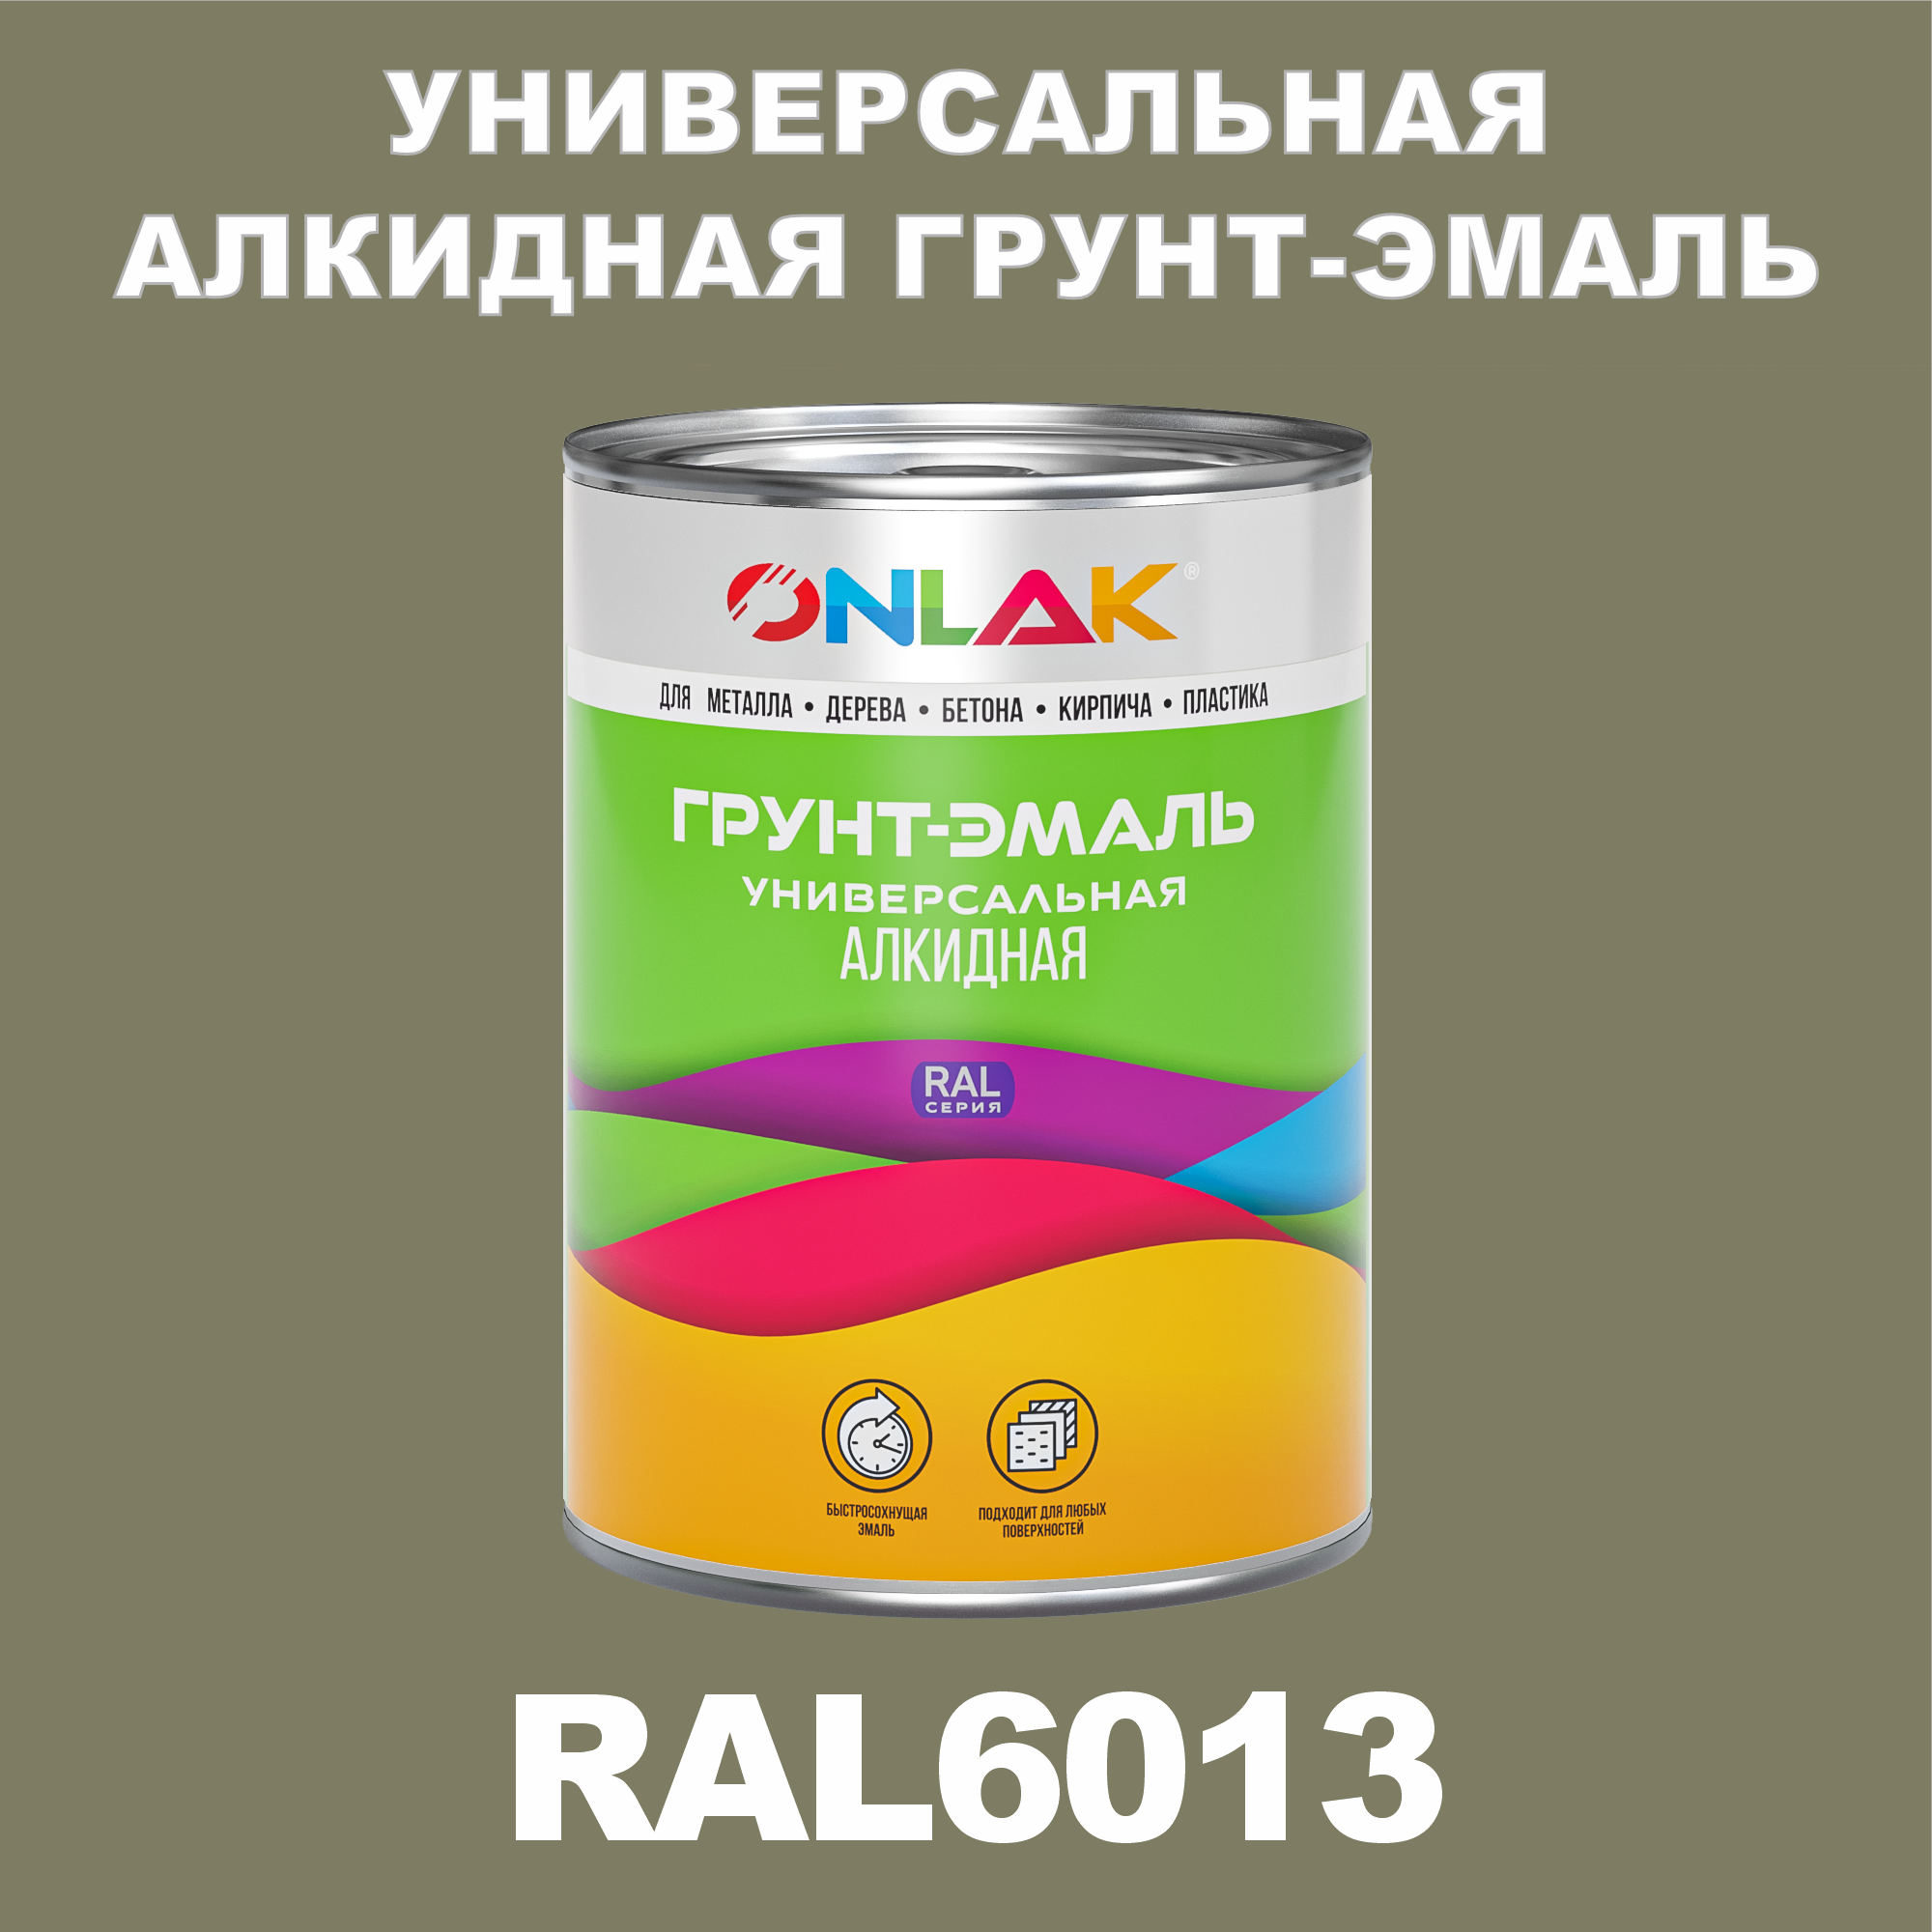 Грунт-эмаль ONLAK 1К RAL6013 антикоррозионная алкидная по металлу по ржавчине 1 кг грунт эмаль neomid по ржавчине быстросохнущая алкидная серая 0 9 кг